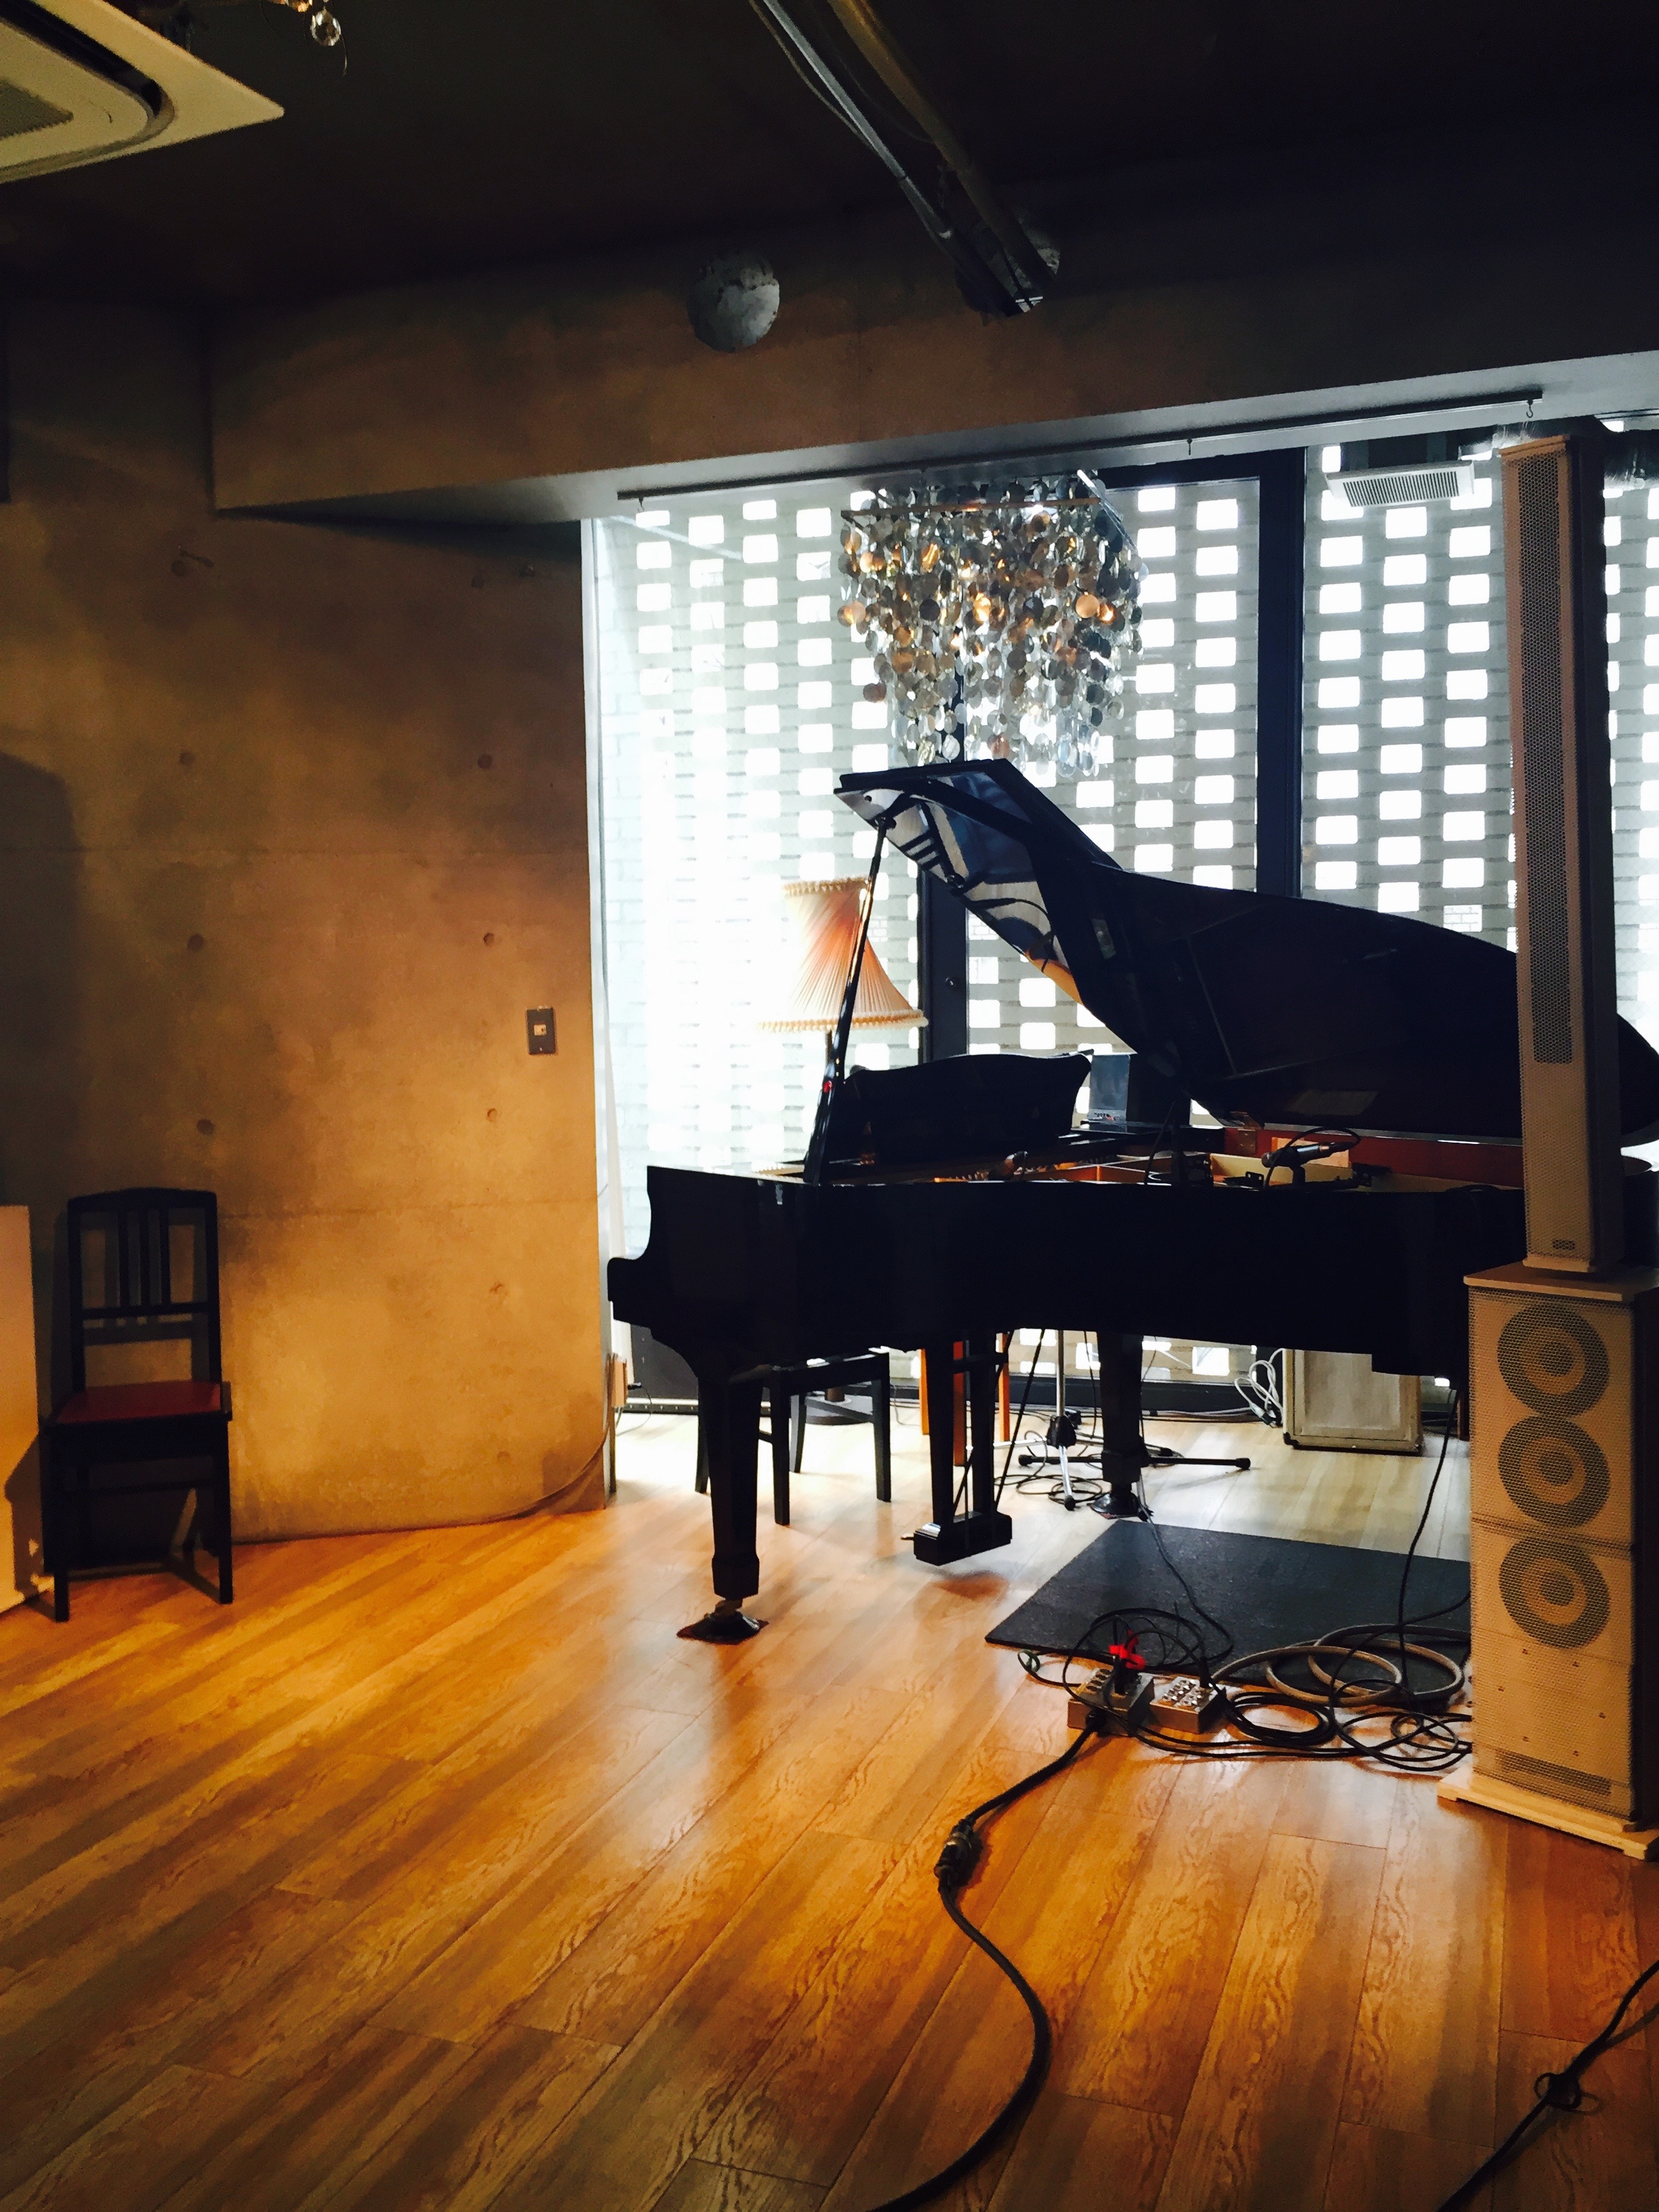 【下北沢】グランドピアノに充実の音楽機材♪可能性が広がる「Workshop Lounge SEED SHIP」